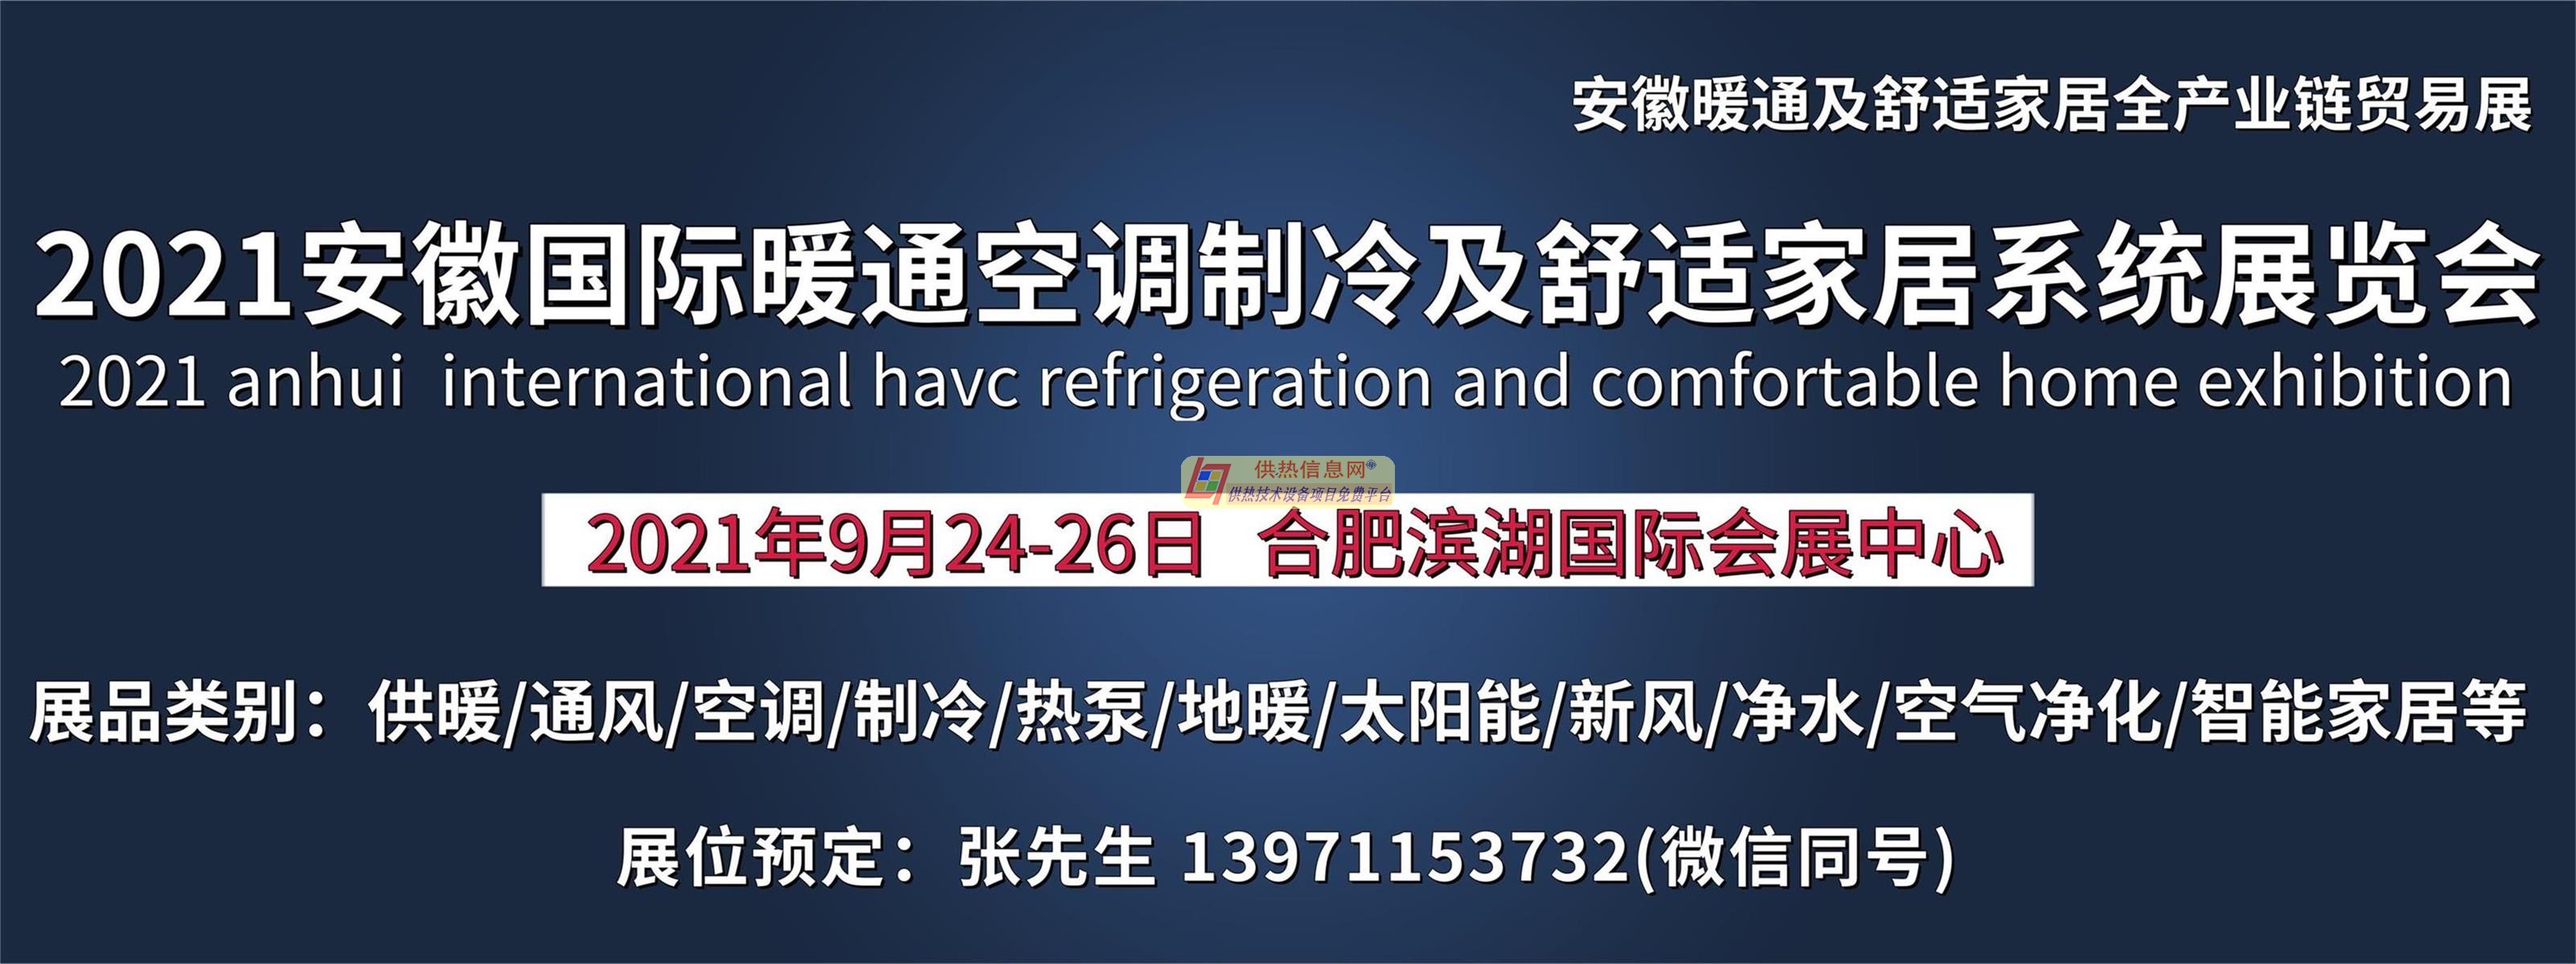 2021安徽暖通空调制冷及舒适家居系统展览会